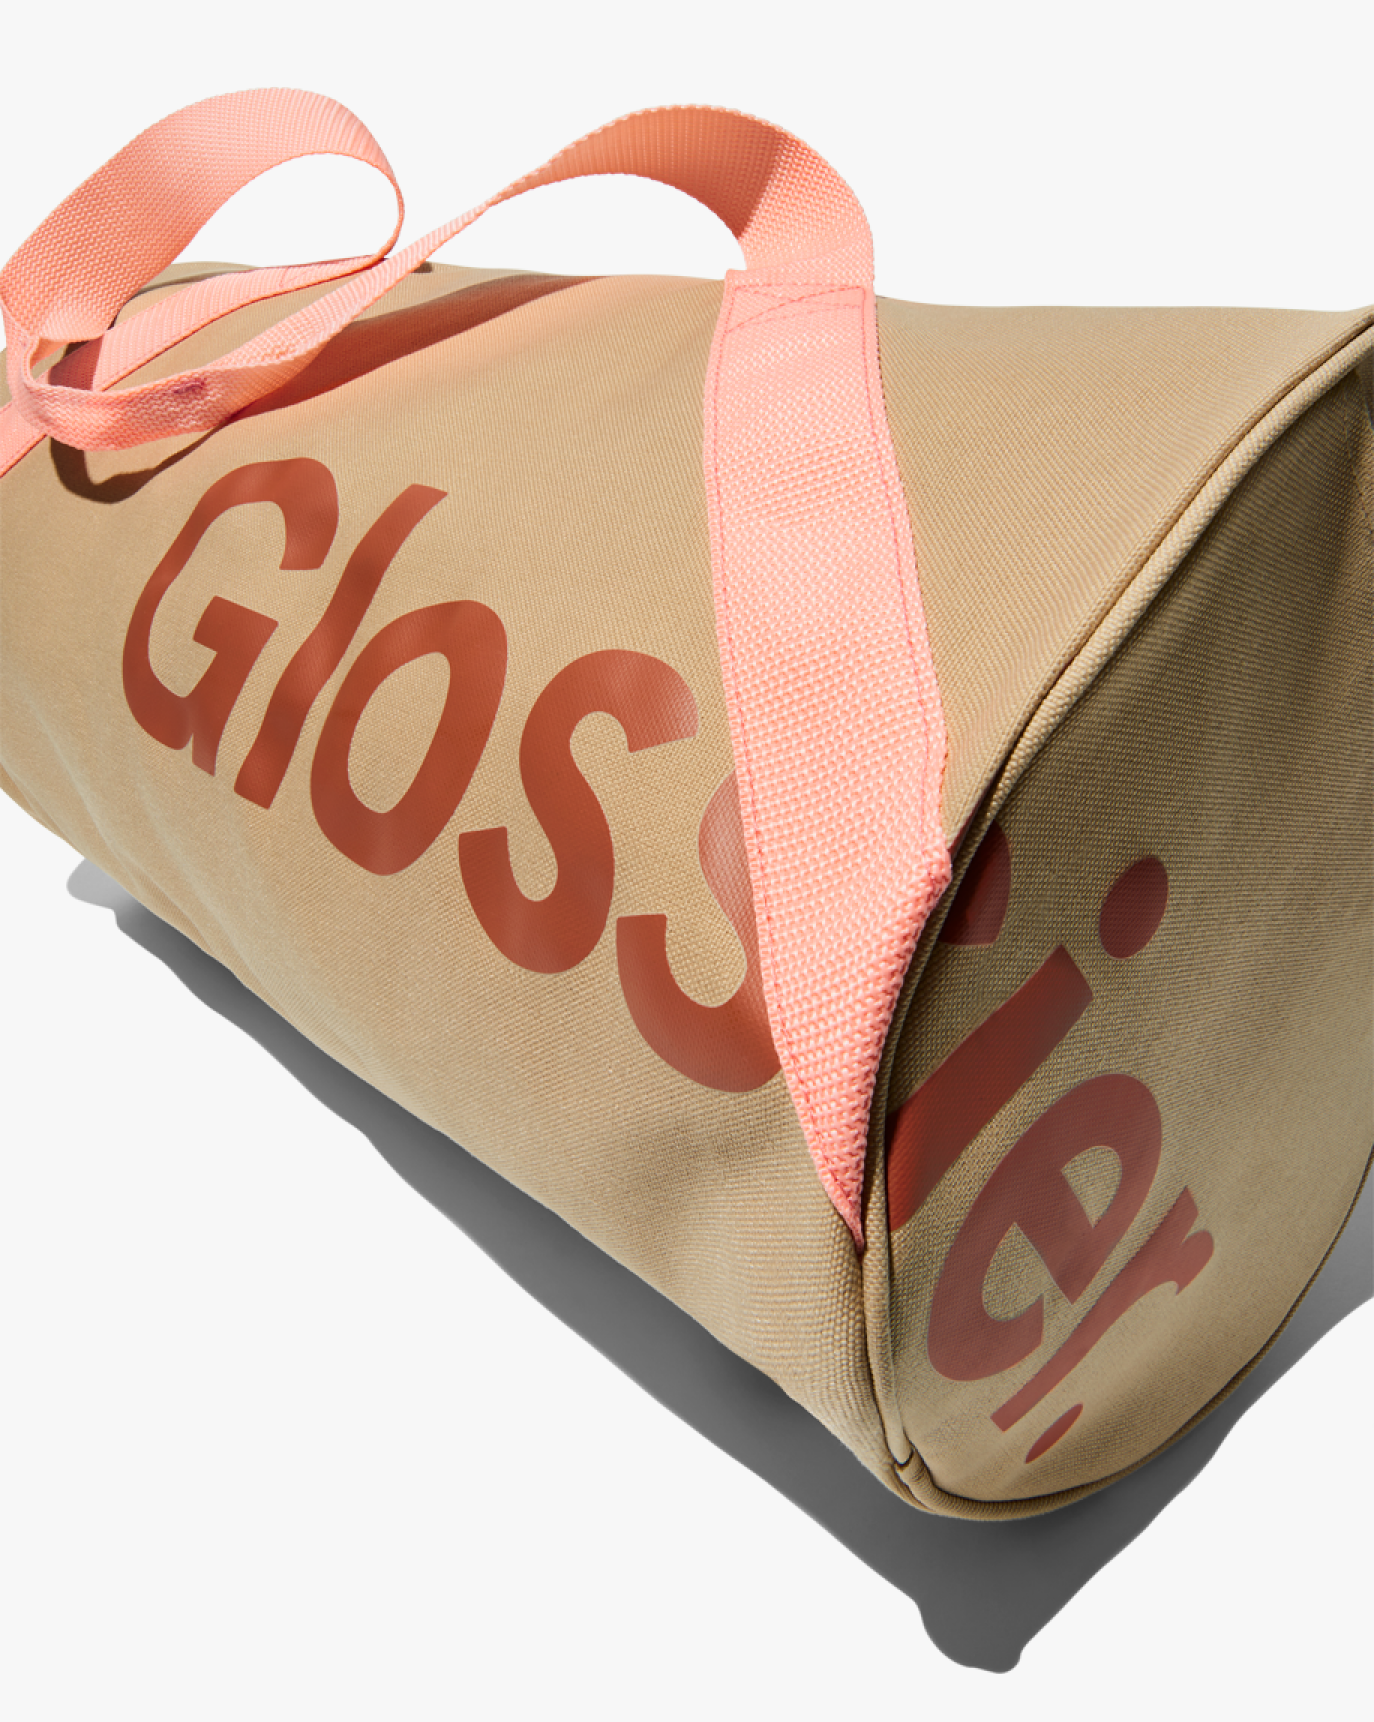 glossier bag  Glossier bag, Beauty bag, Glossier